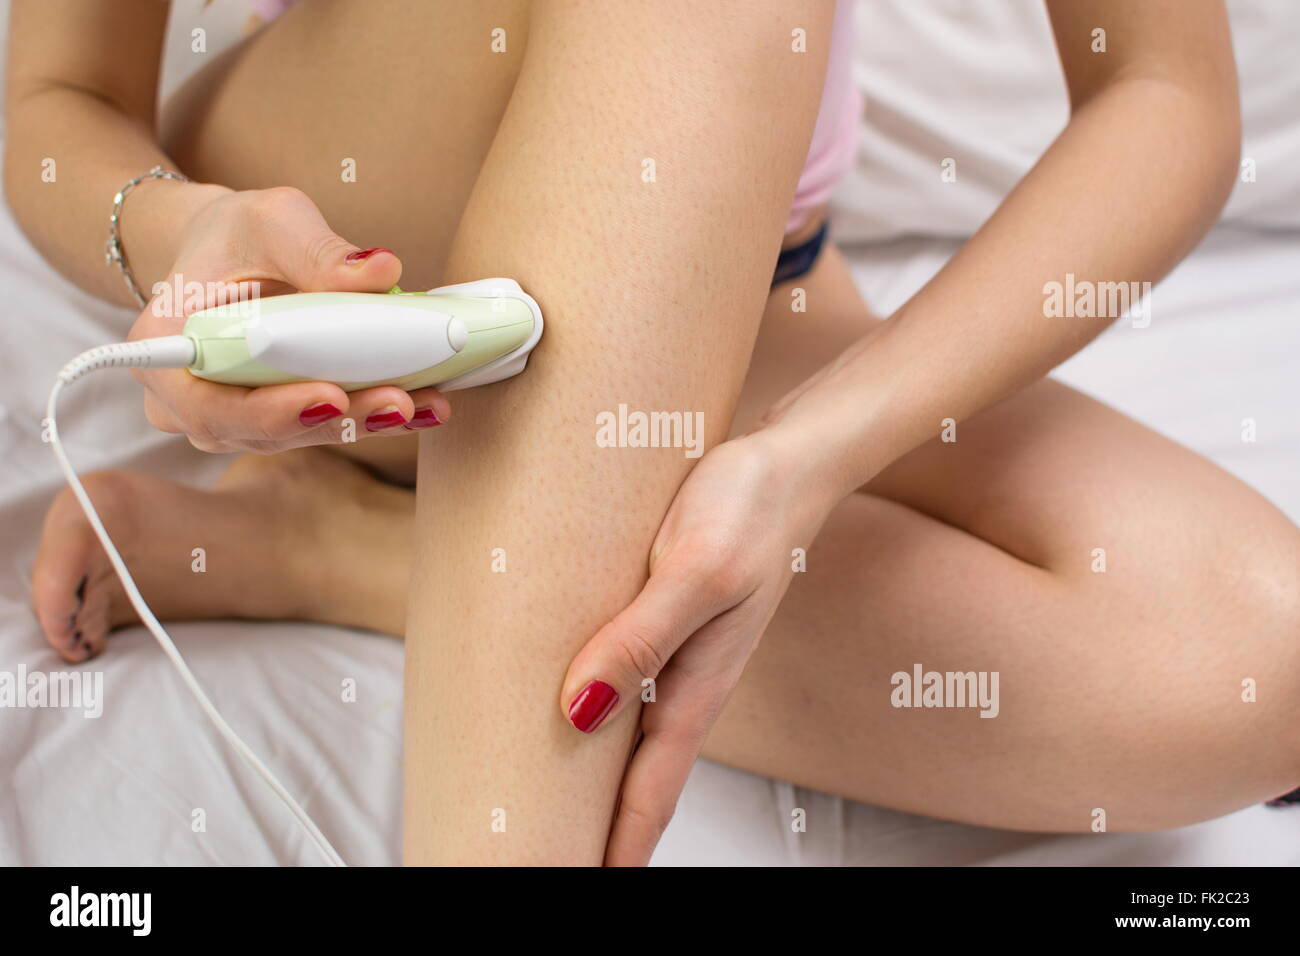 Mädchen Epilates ihr Bein mit einem Epilierer auf dem Bett Stockfoto